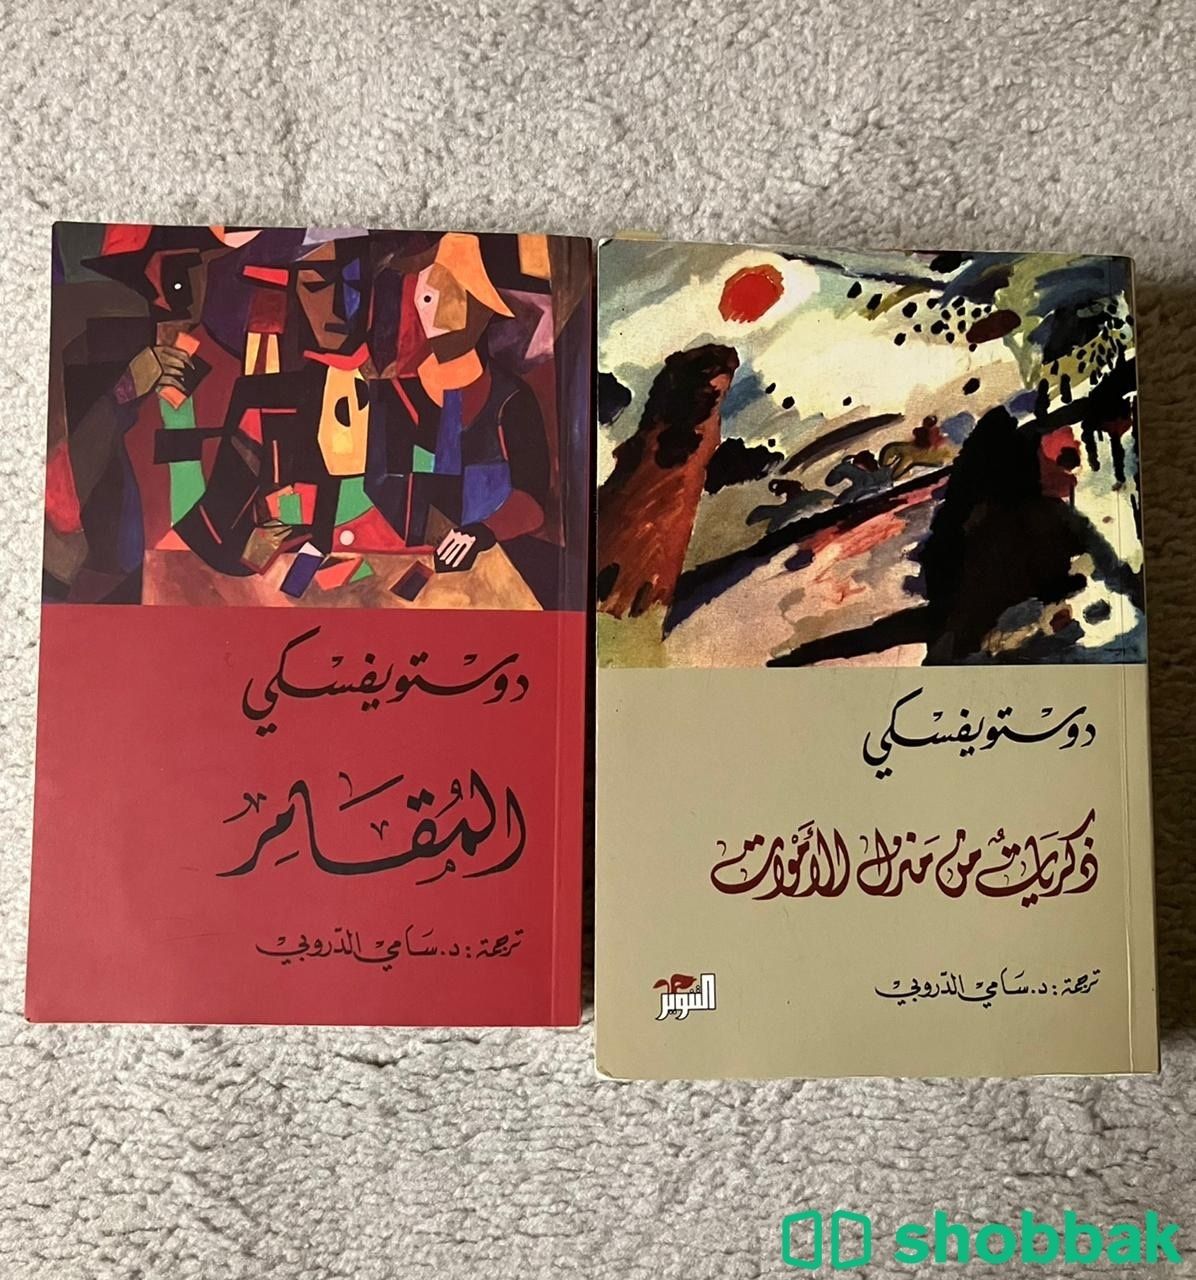 كتاب دستيوفيسكي ذكريات في منزل الاموات ، المقامر Shobbak Saudi Arabia